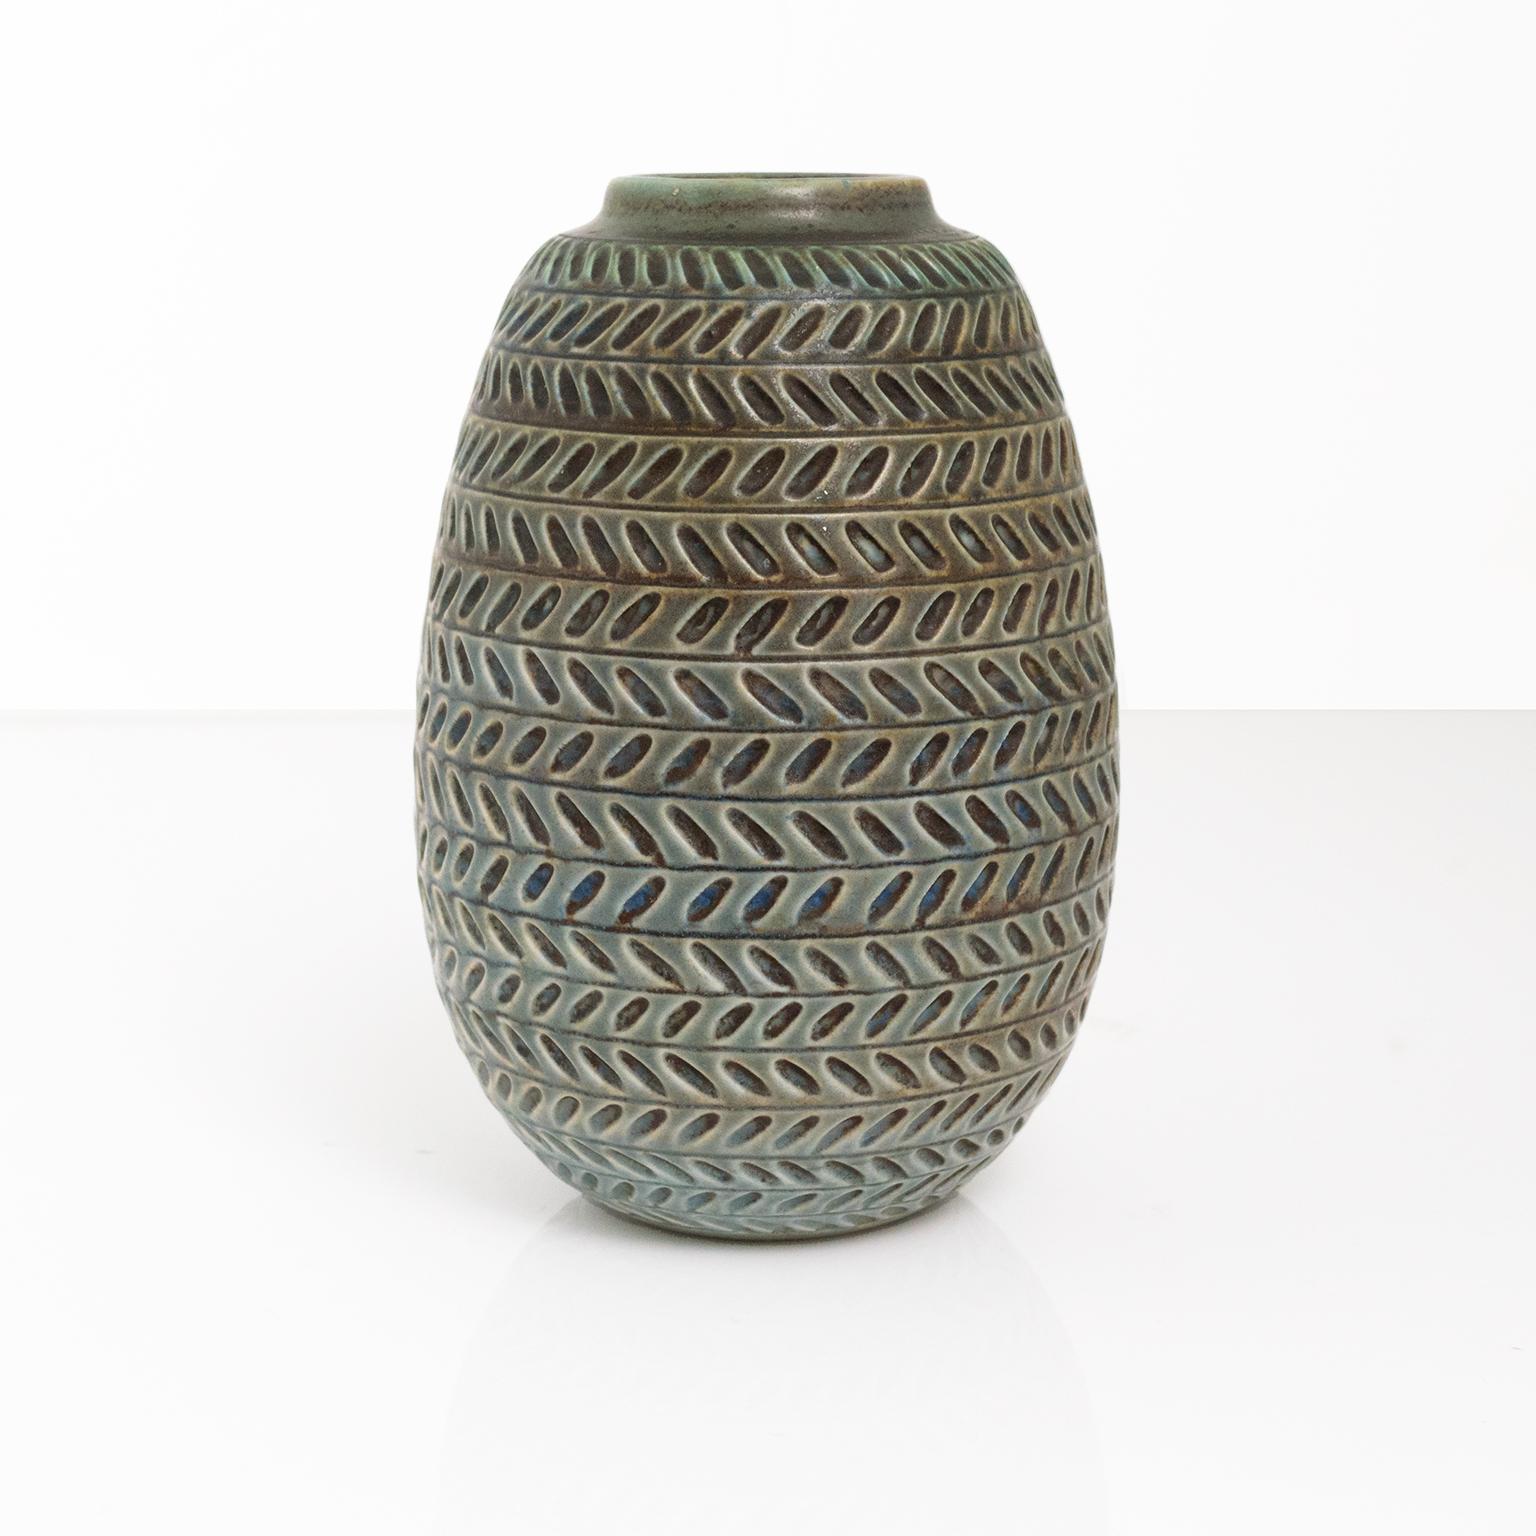 Strukturierte Vase von Gertrud Lonegren mit horizontalen Mustern in neutralem Blau und Grün. Dieses Atelierstück wurde zwischen 1937-42 in Rorstrand geschaffen.
Maße: Höhe: 7